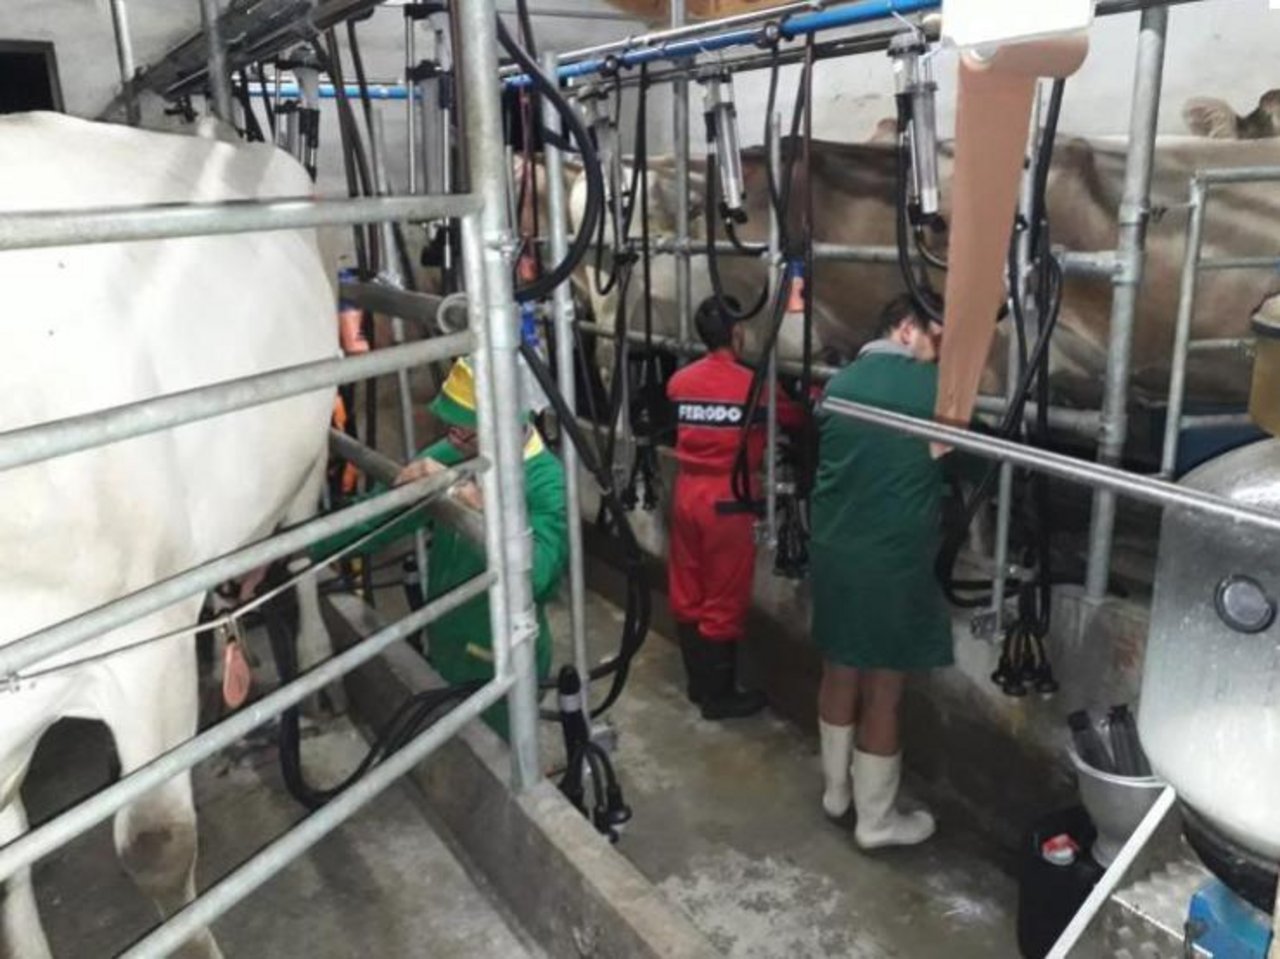 Milchkontrollen werden unter anderem durchgeführt, damit jedem Bauern der entsprechende Milchertrag angerechnet werden kann. (Bilder Regula Colombo)